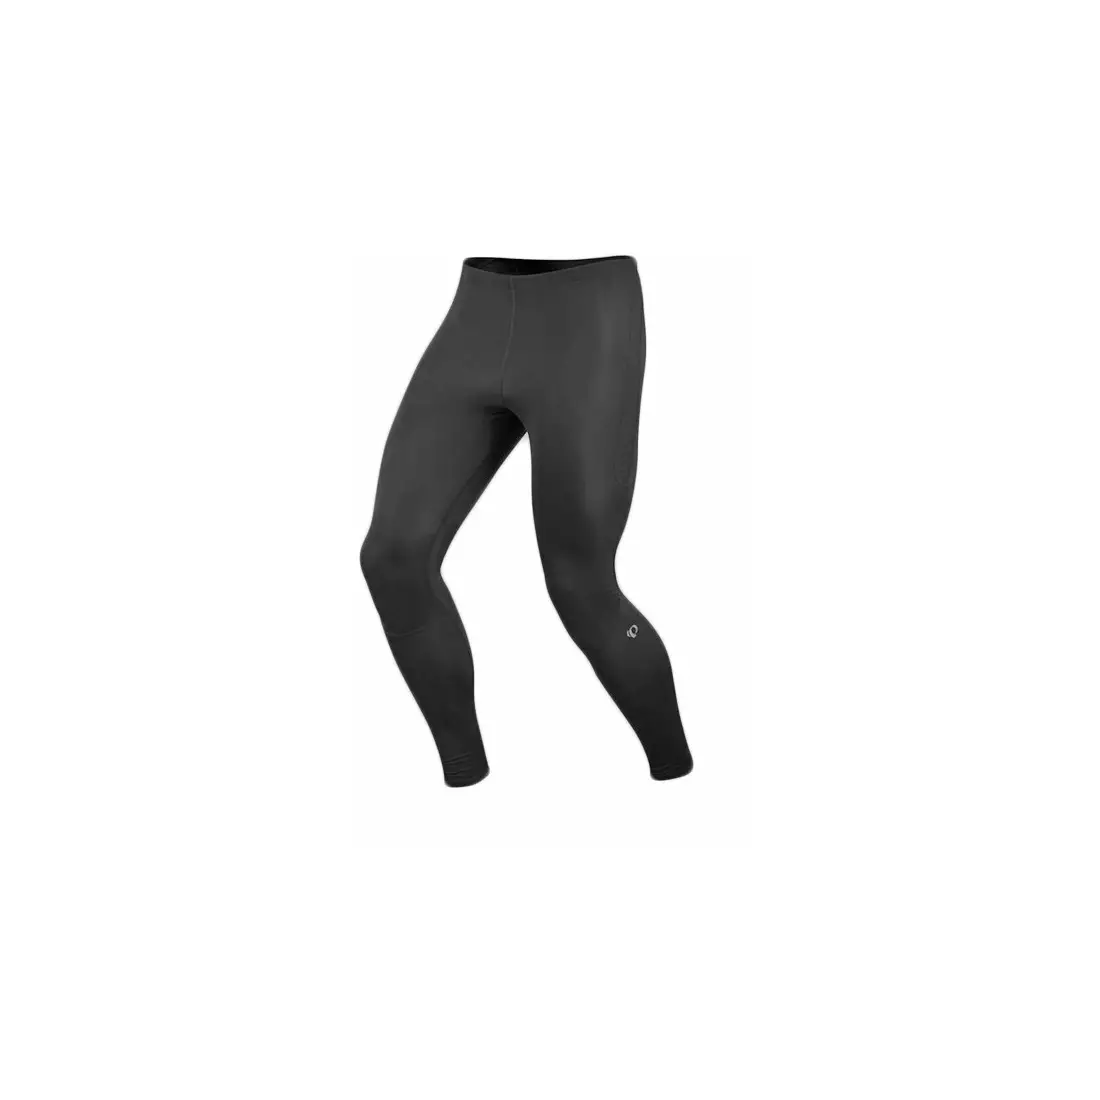 PEARL IZUMI RUN pánske bežecké nohavice FLY 12111407-021, farba: čierna